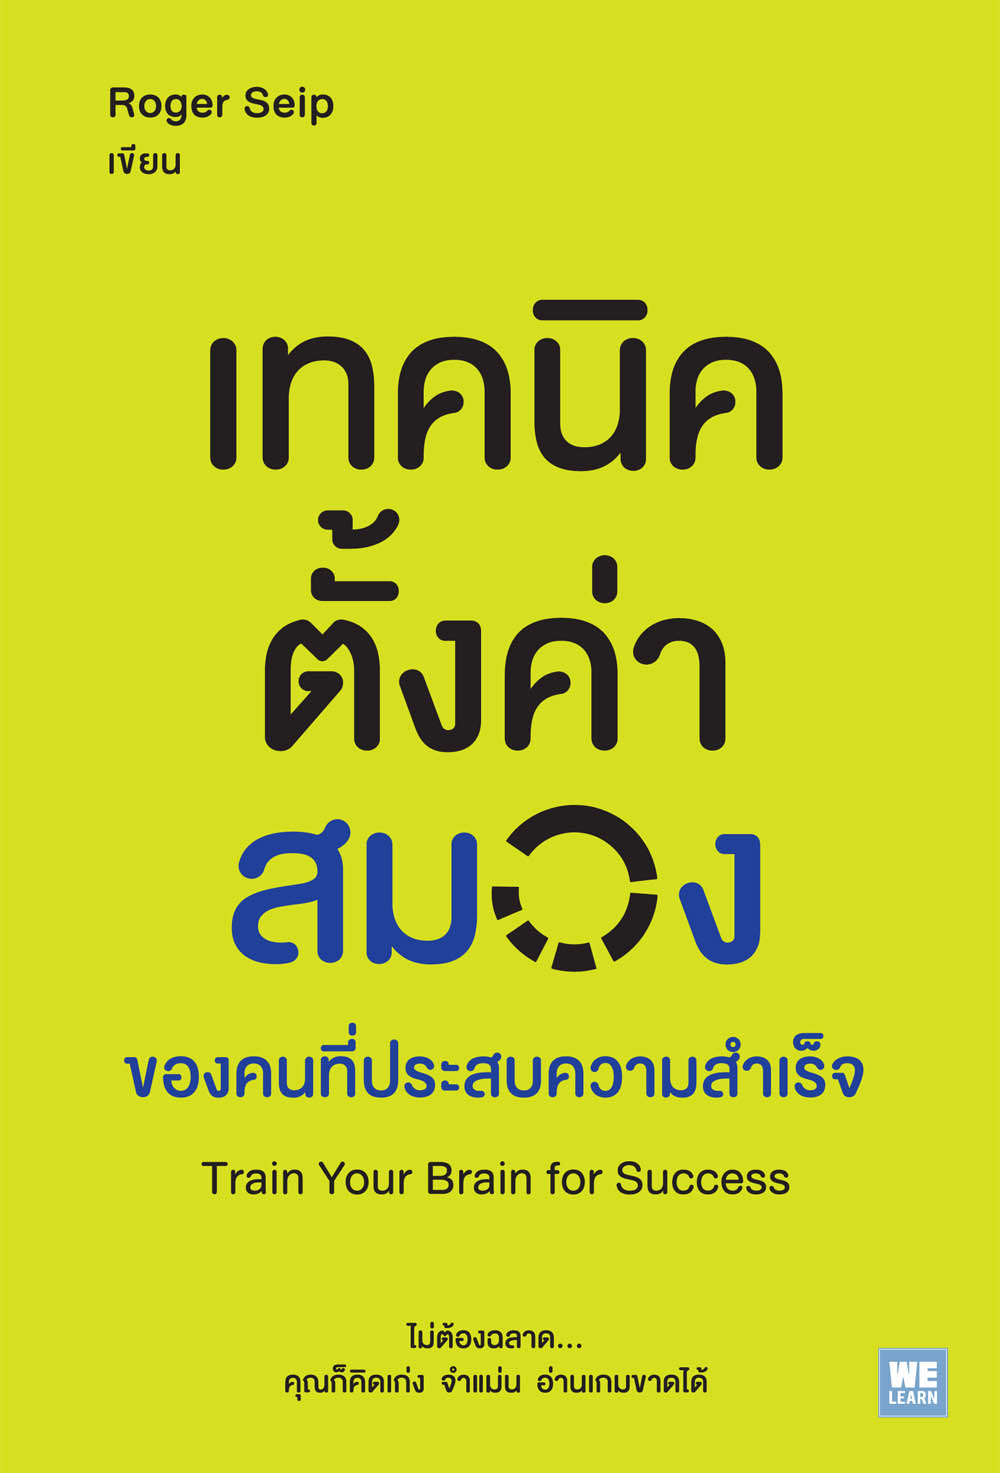 เทคนิคตั้งค่าสมองของคนที่ประสบความสำเร็จ        (Train Your Brain for Success)